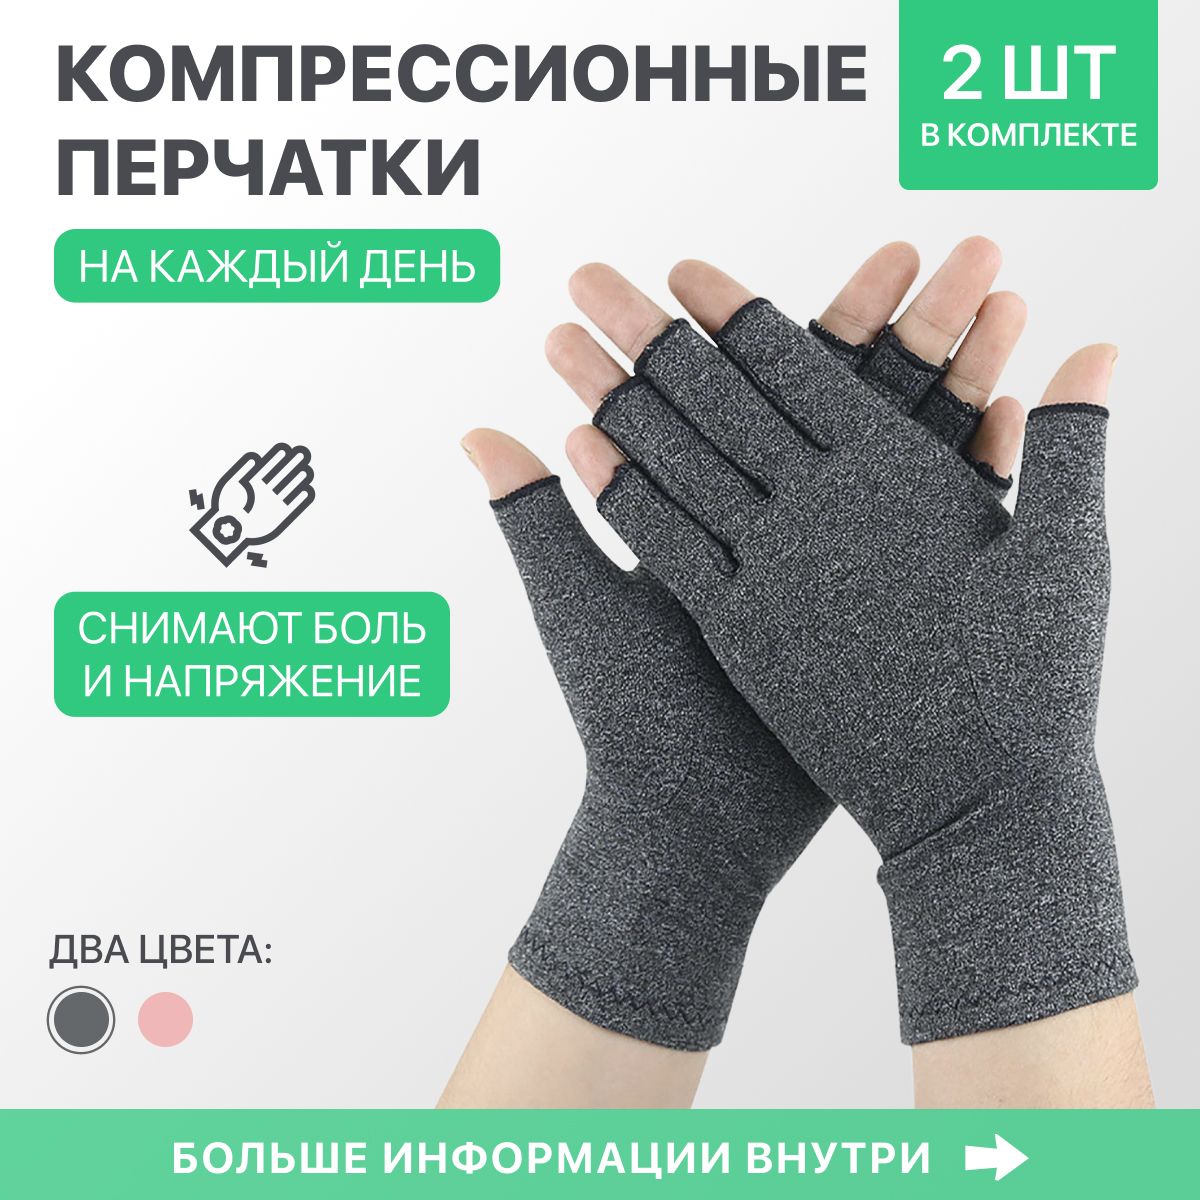 Компрессионные перчатки купить. Компрессионные противоартритные перчатки. Компрессионные перчатки с пальцами. Компрессионная перчатка. Перчатки для компрессионного трикотажа.